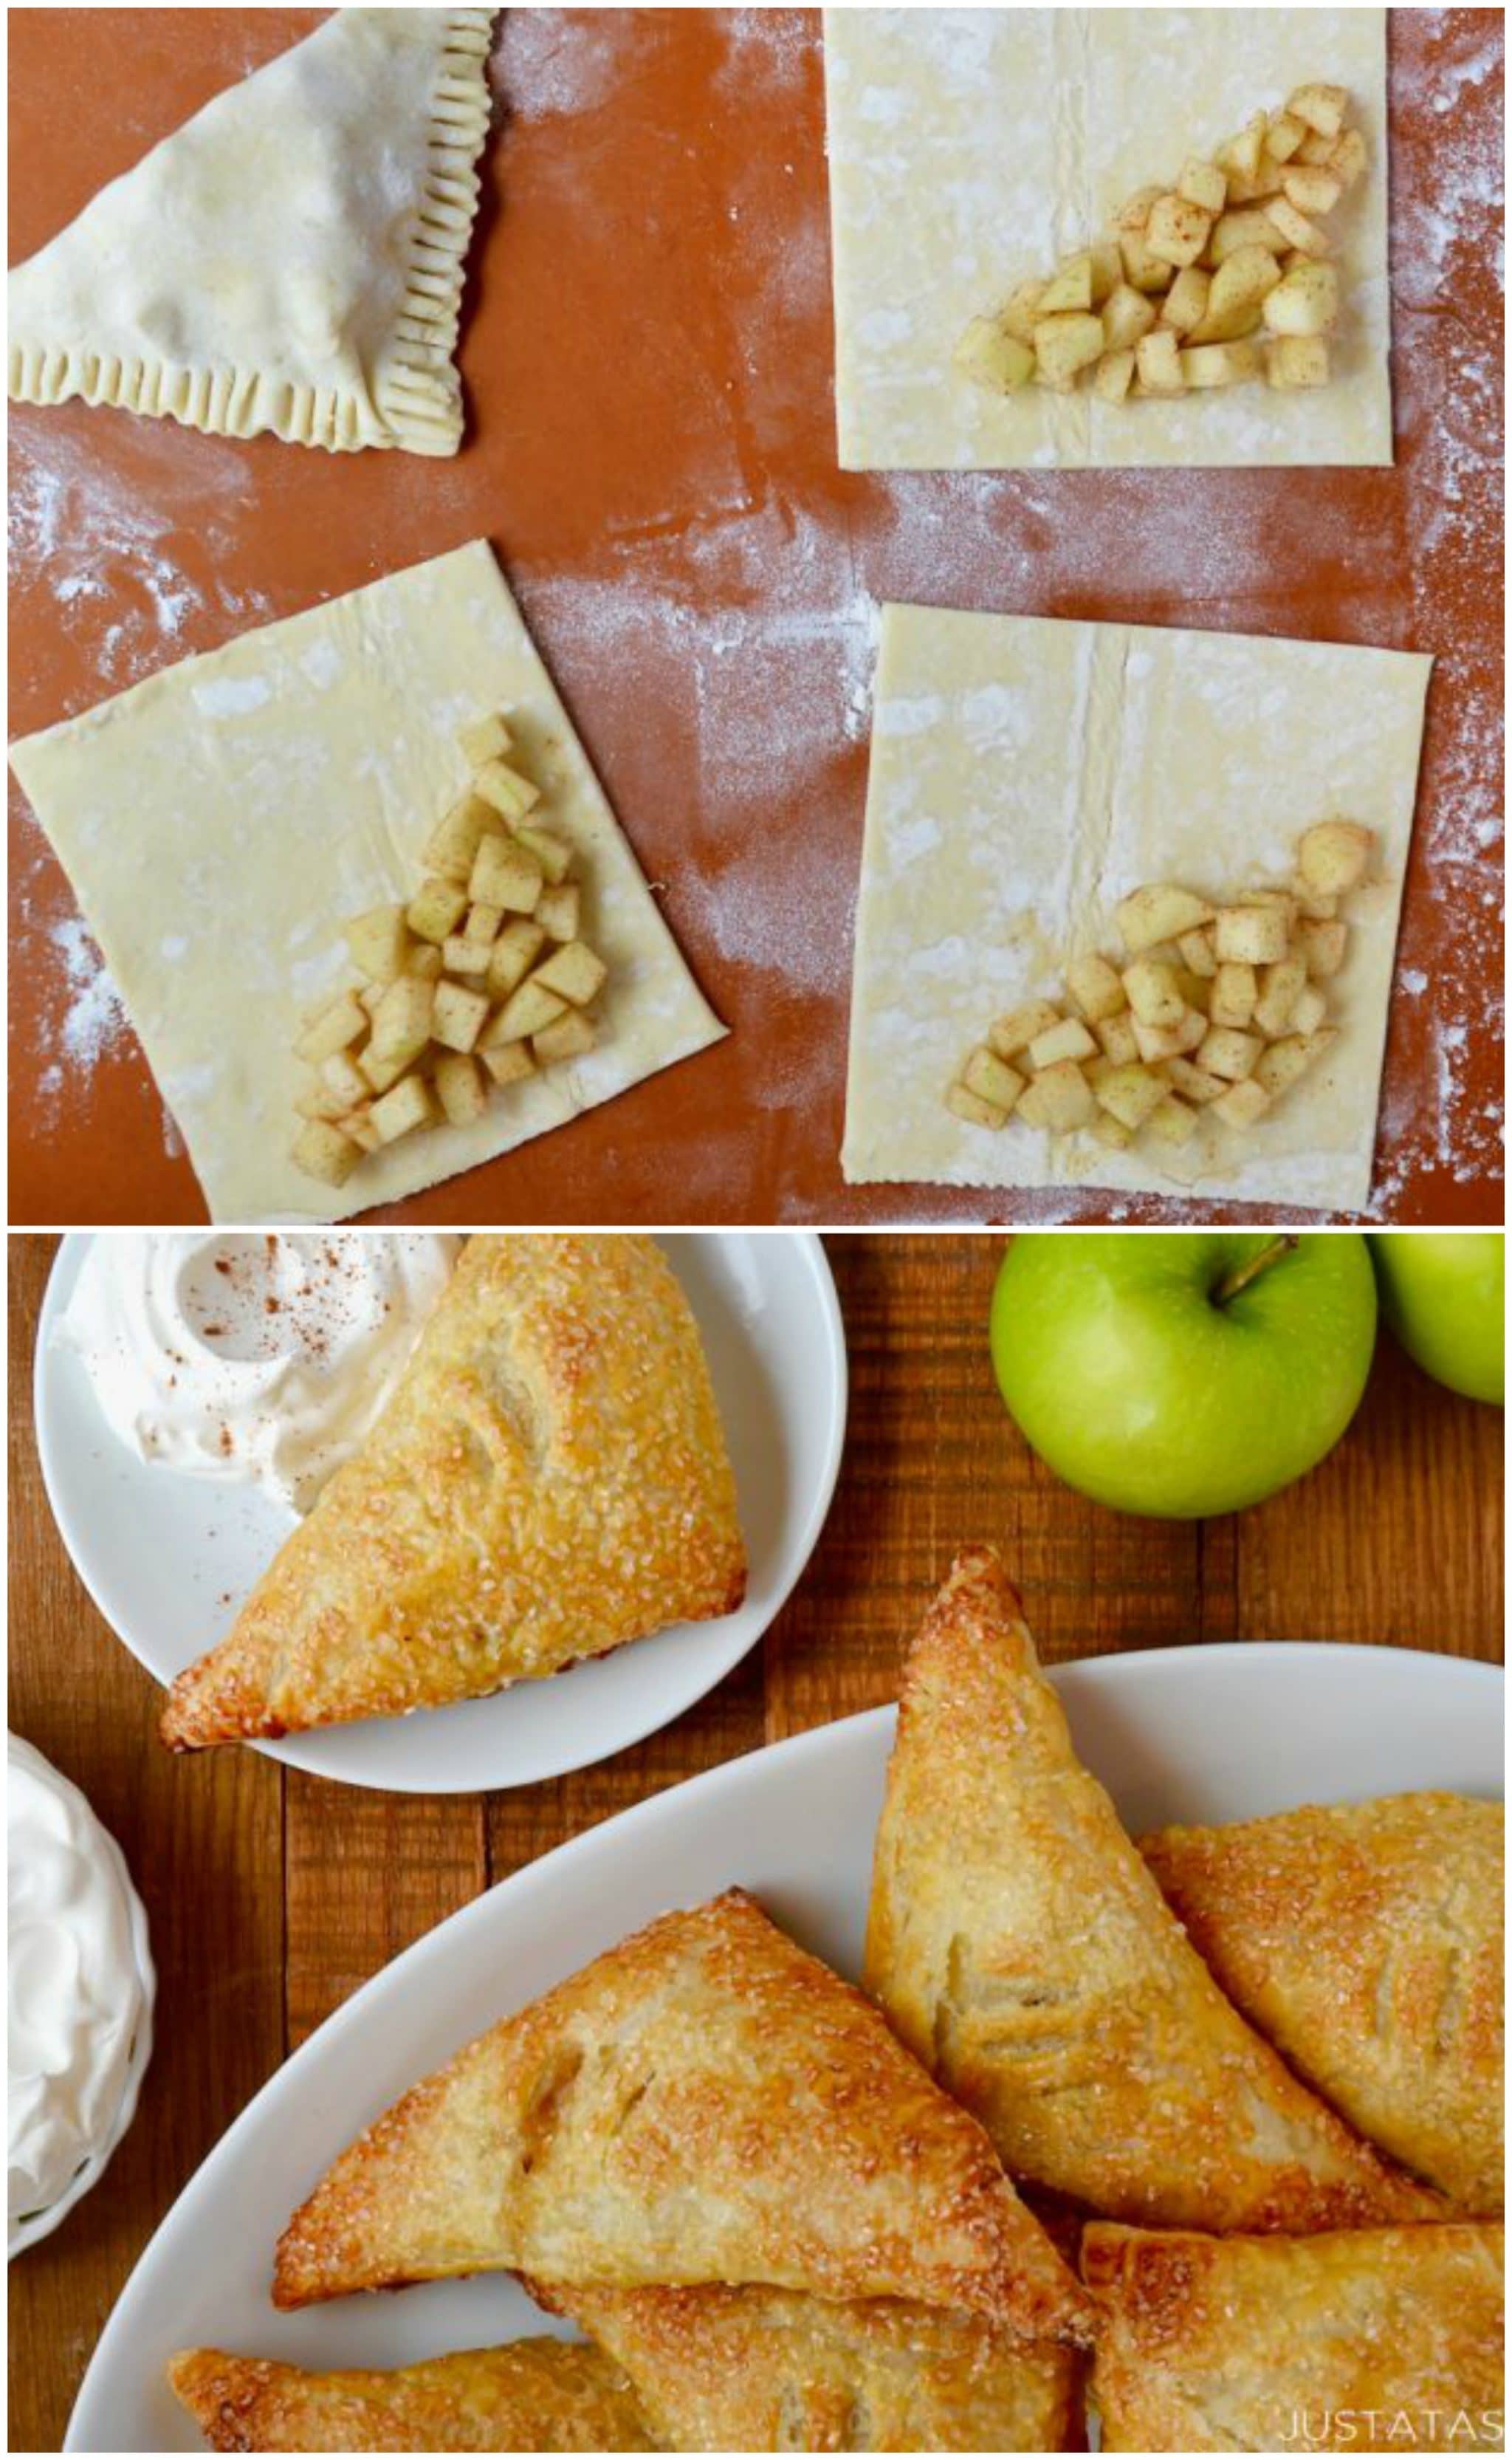 7 jednoduchých receptů z lahodných jablek, které Vás oslní svou chutí a rychlou přípravou!